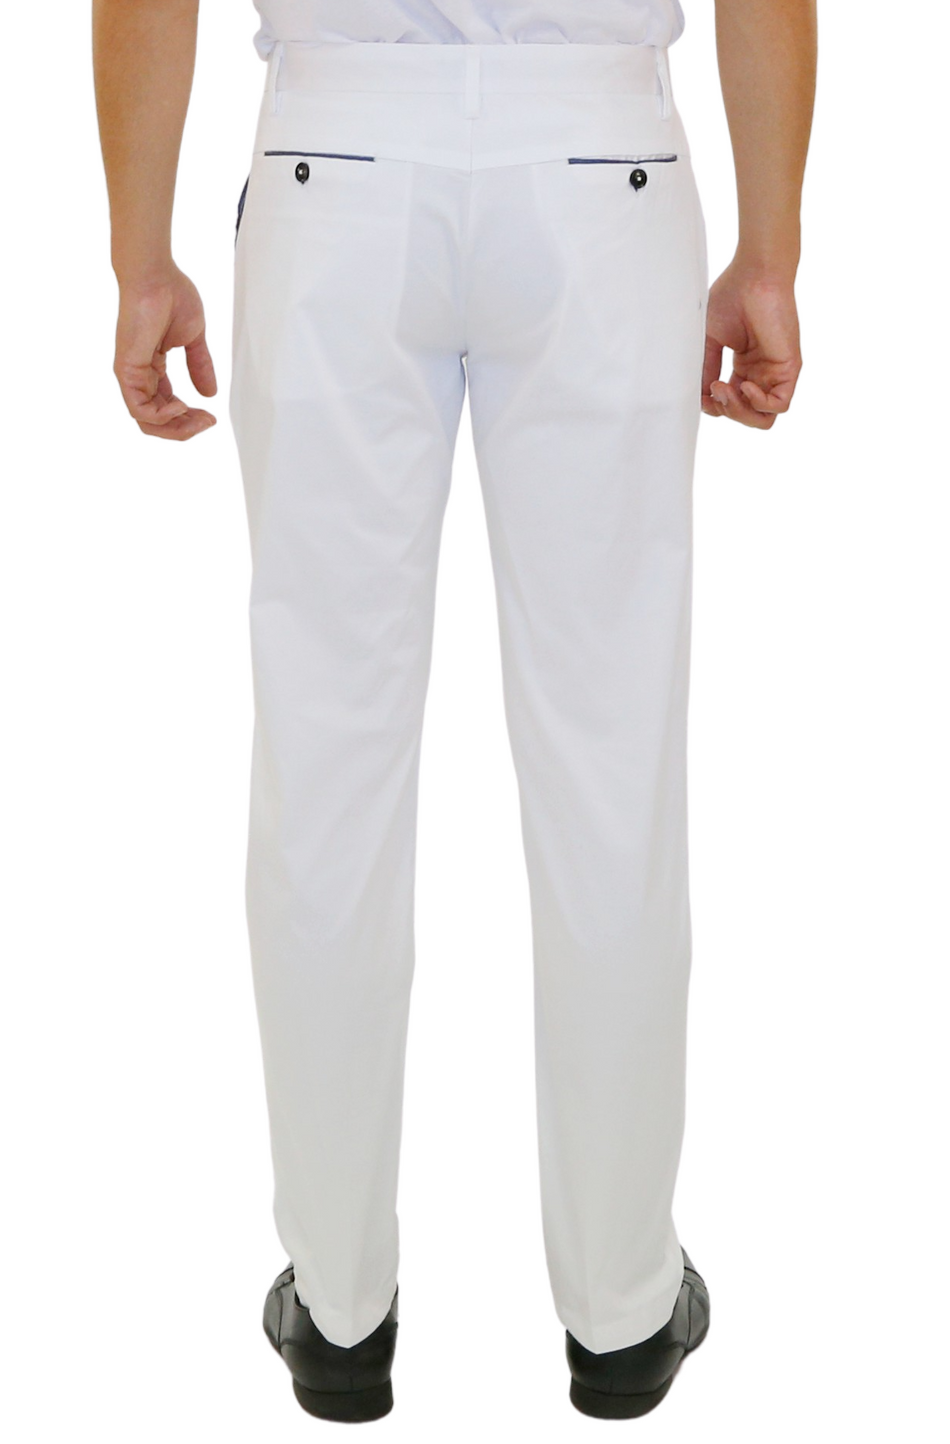 BESPOKE - White Pants for Men - 183122 - www.– BESPOKE MODA